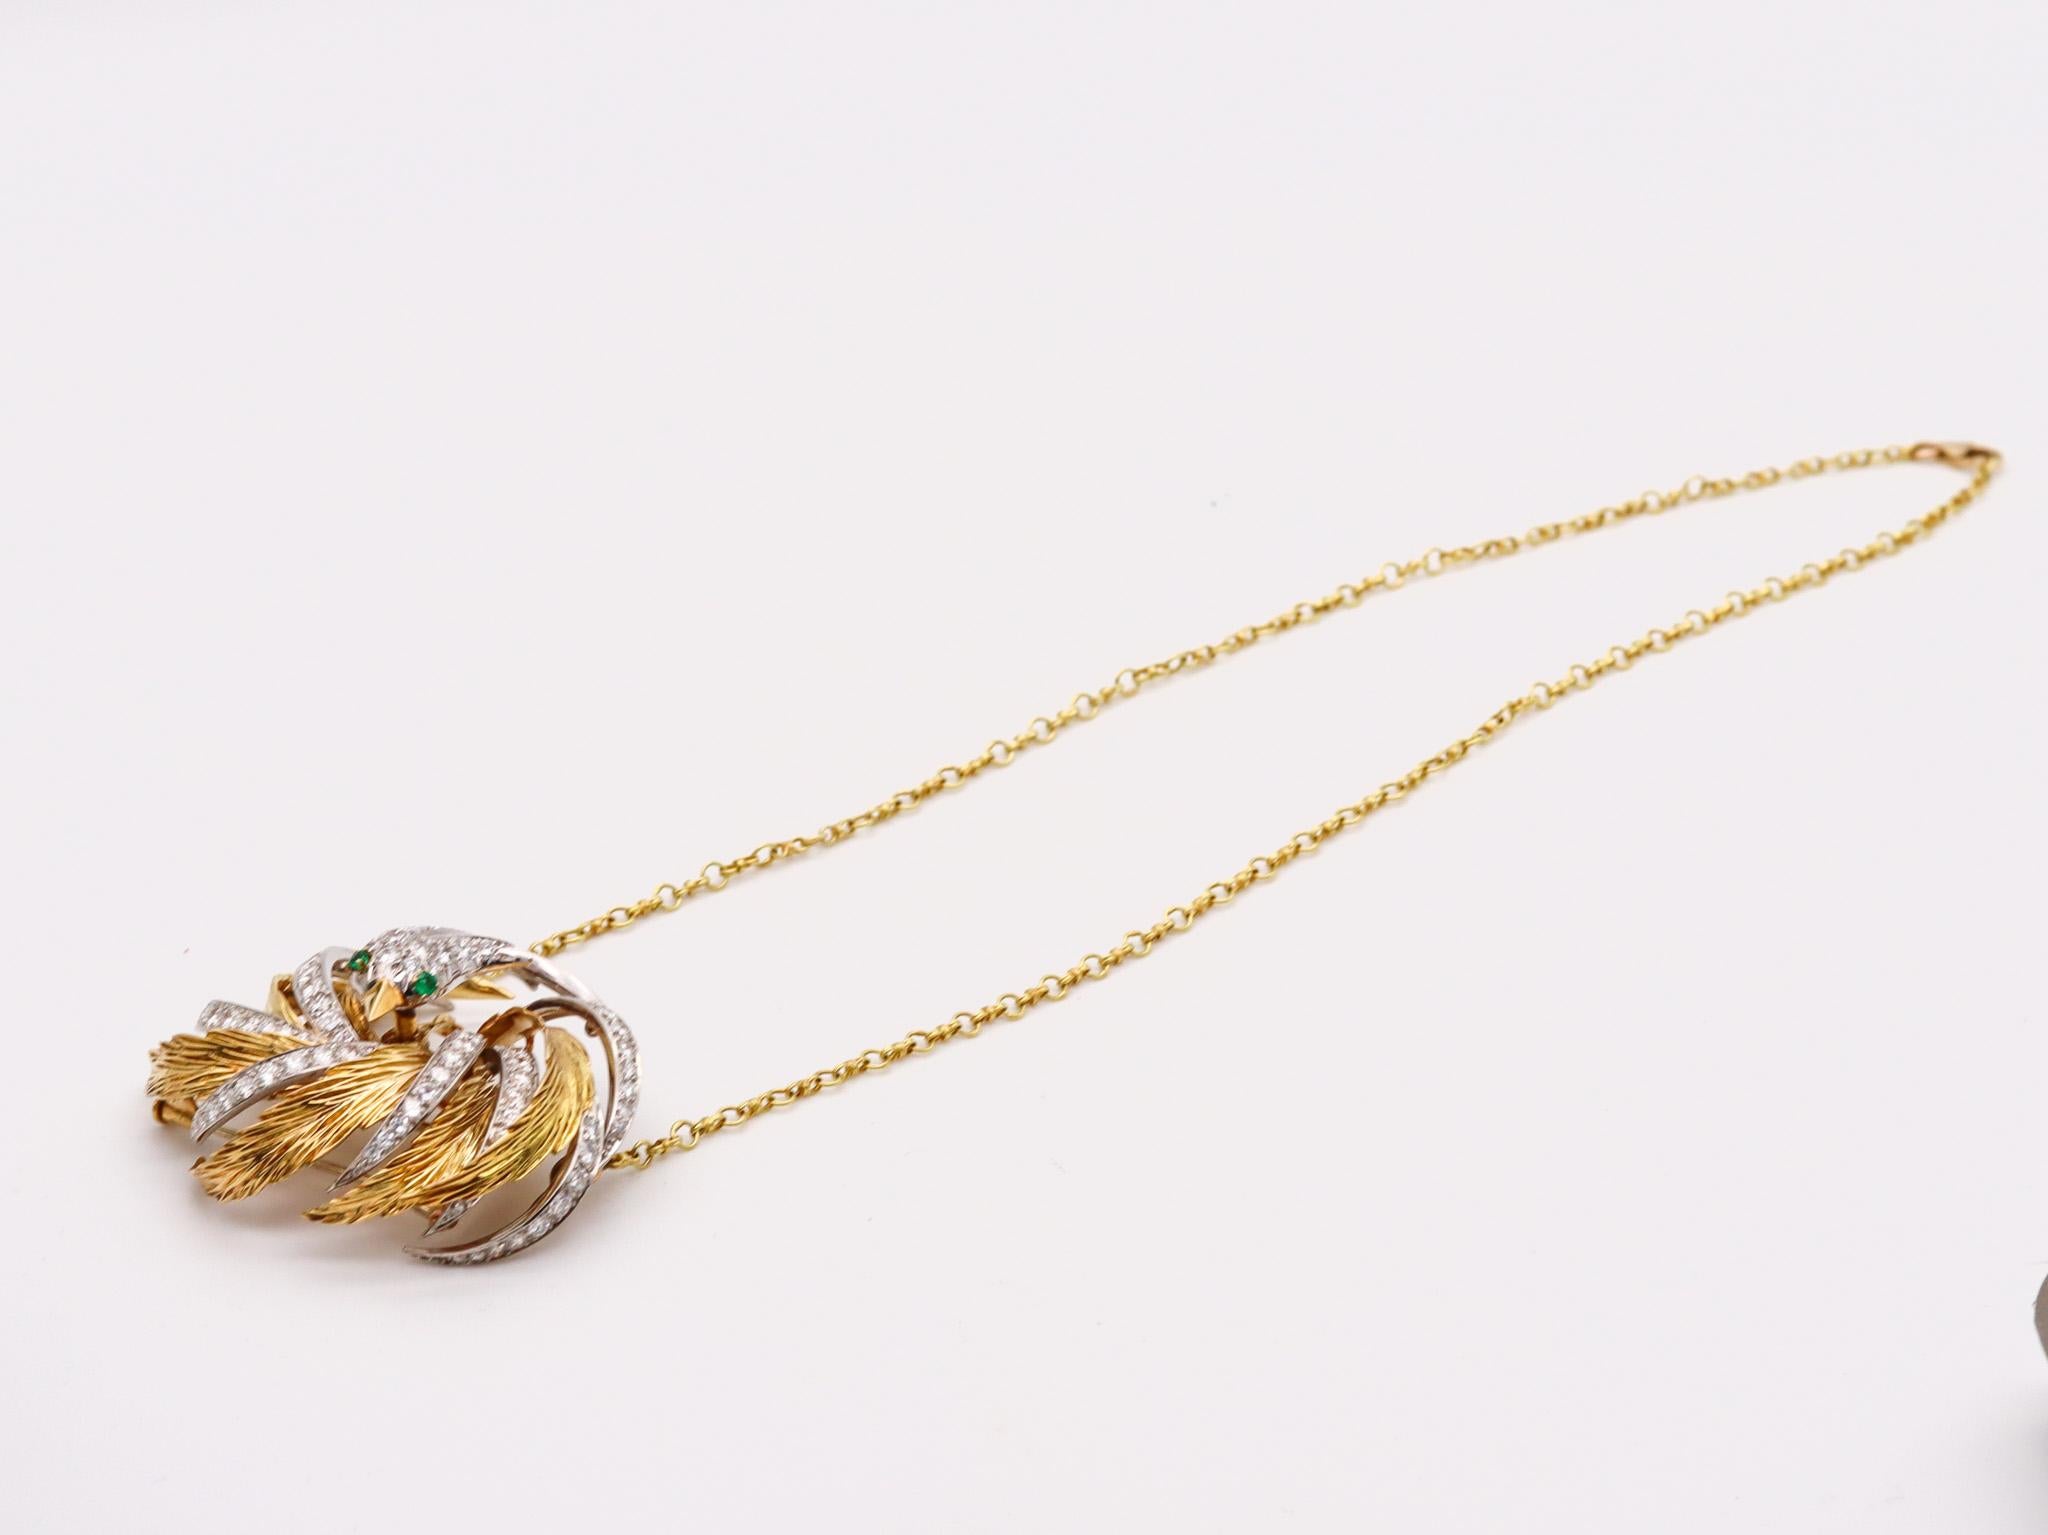 Halskette mit Paradiesvogelbrosche, entworfen von Pierre Sterlé (1905-1978).

Ein beeindruckendes Schmuckstück, das Anfang der 1960er Jahre im Pariser Schmuckatelier von Pierre Sterlé entstand. Dies ist eine wandelbare Halsketten-Brosche in Form